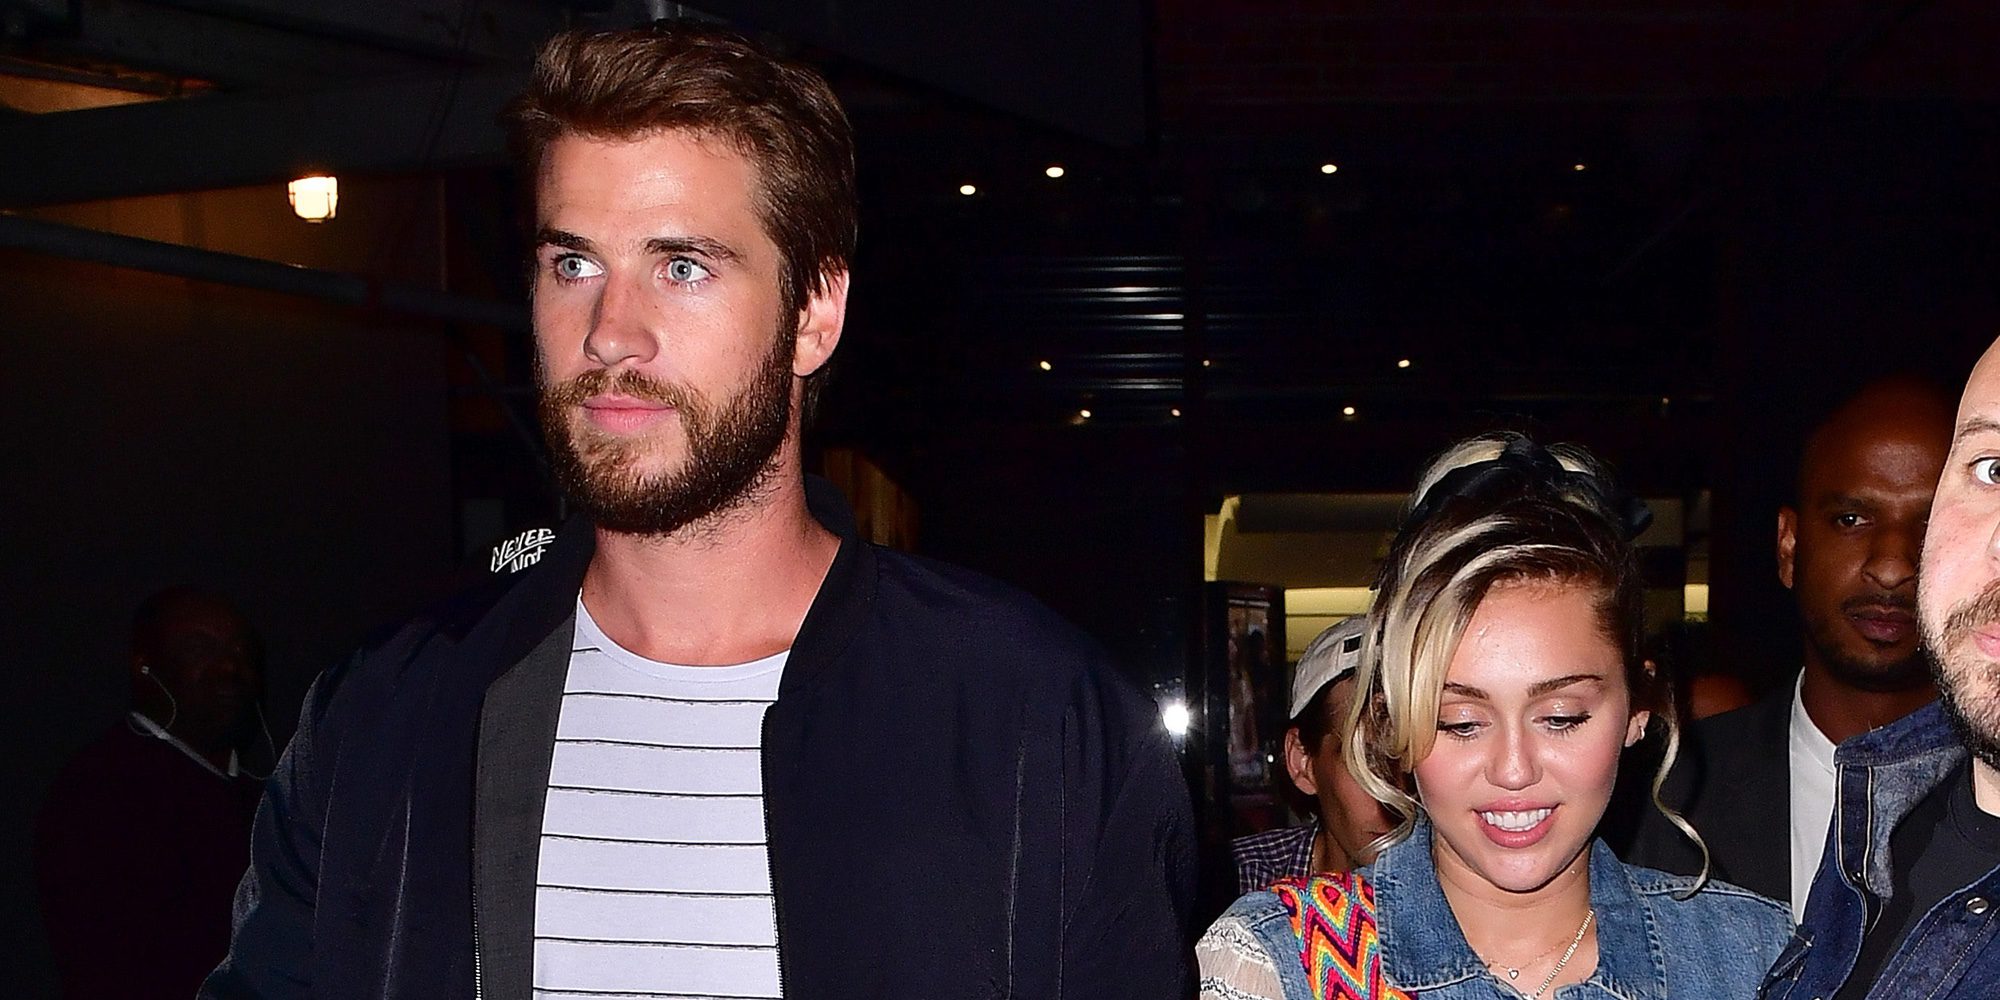 Miley Cyrus confirma que su compromiso con Liam Hemsworth continúa en pie